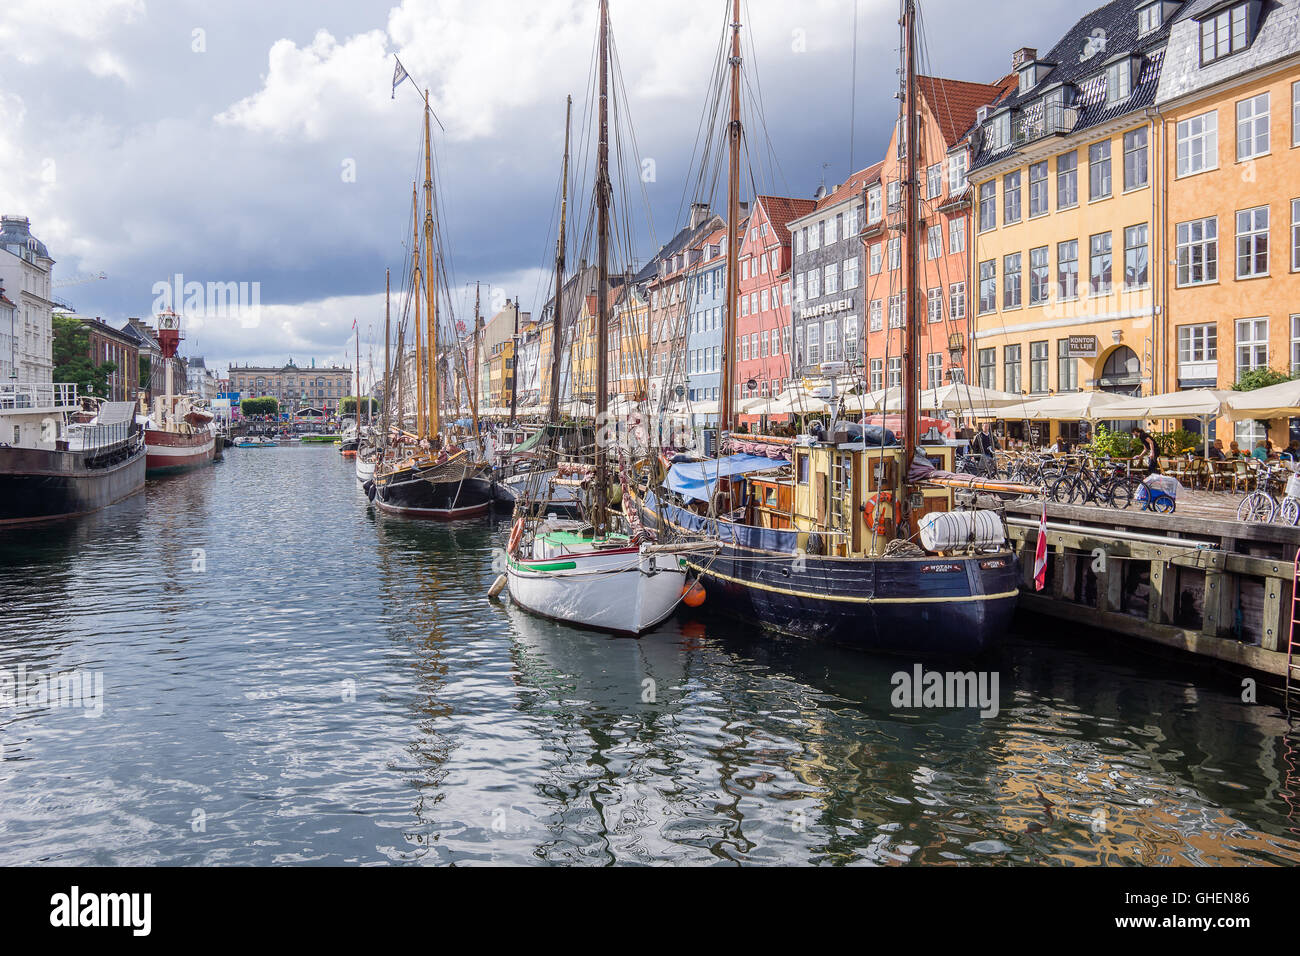 Der nyhavn Harbour ist die wichtigste touristische Attraktion in Kopenhagen mit bunten Häuser und Boote im Wasser widerspiegelt Stockfoto